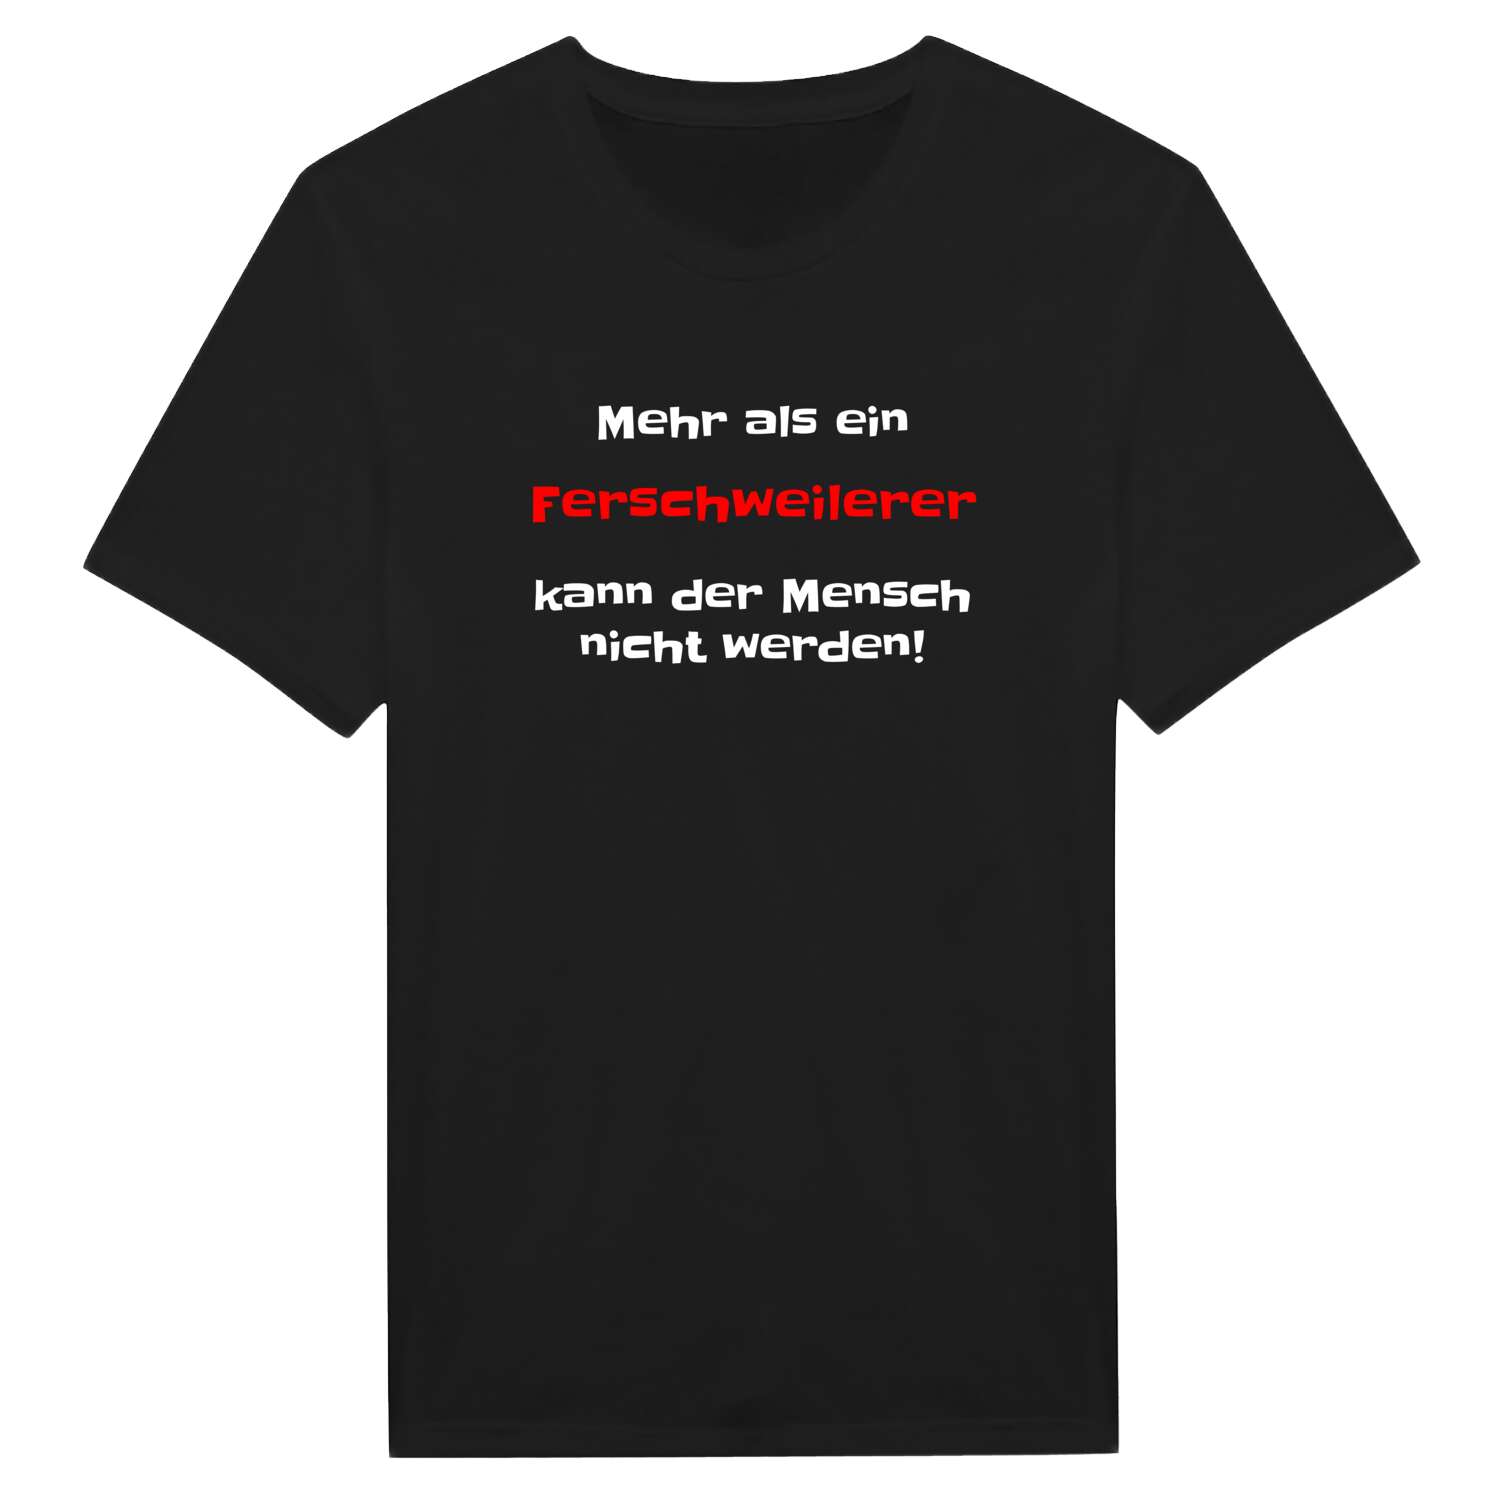 Ferschweiler T-Shirt »Mehr als ein«